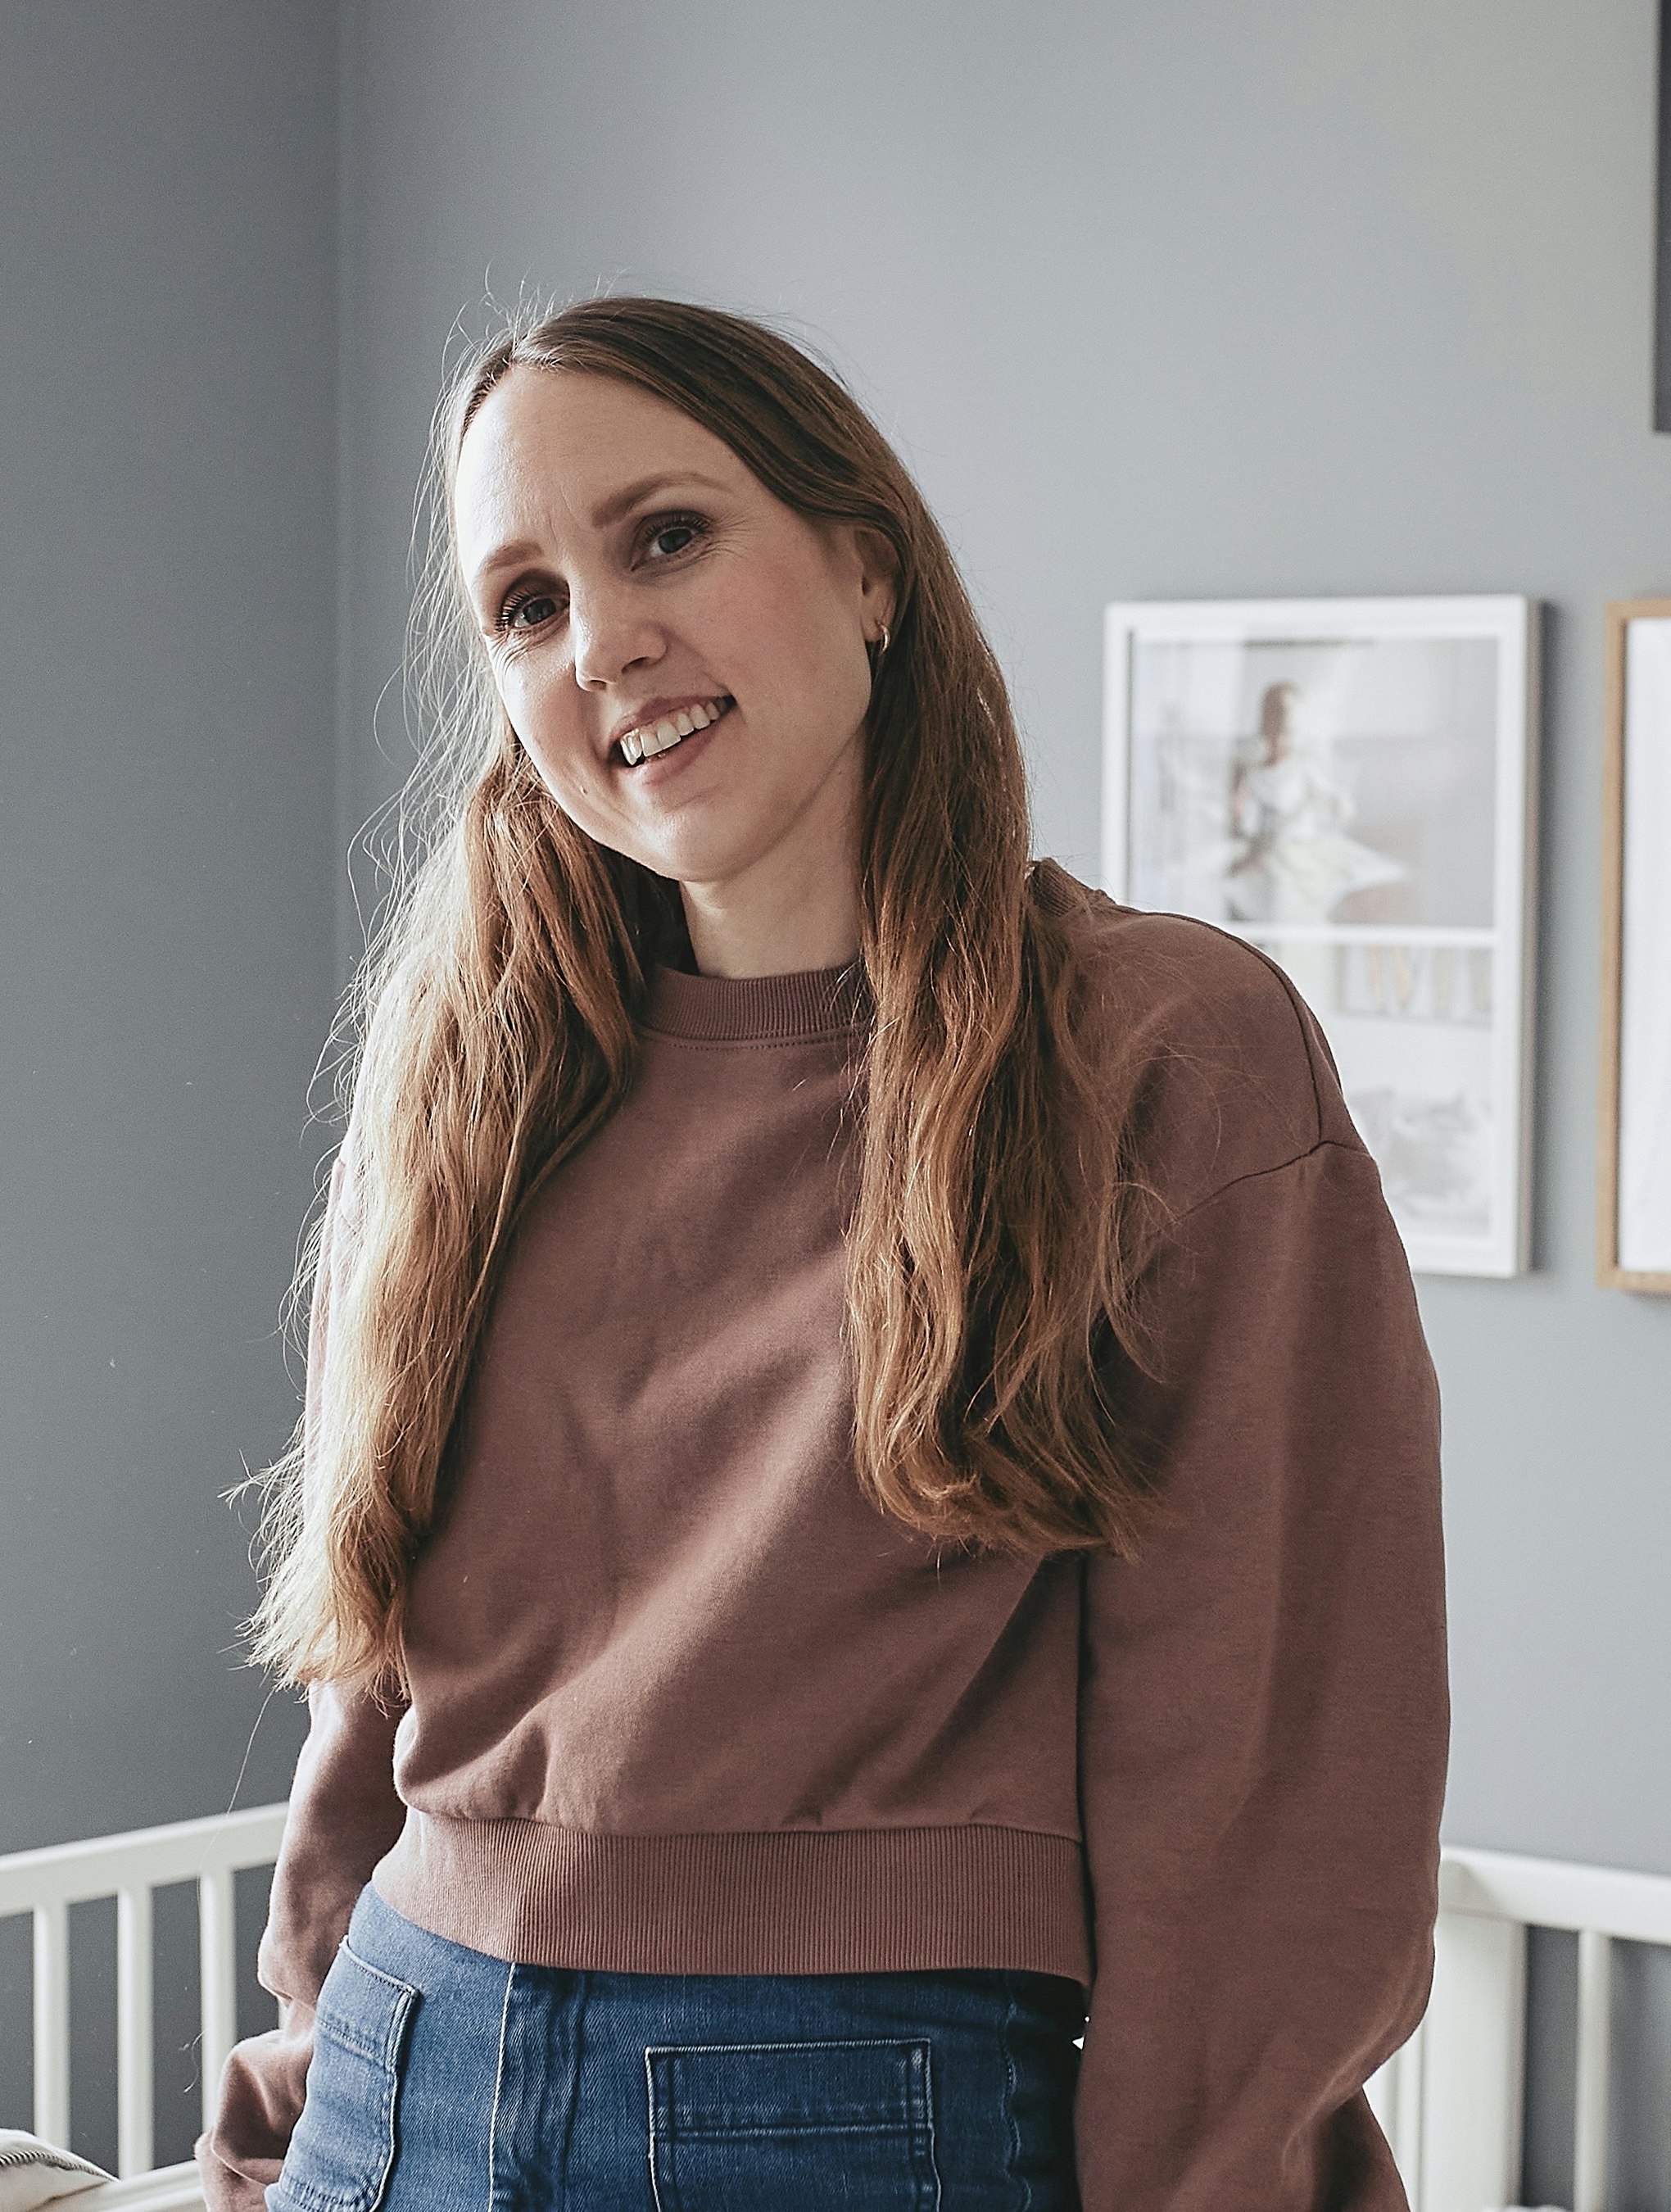 Maria Nordø Jørstad: ”Det er empowering for mig at vise min efterfødselskrop ærligt frem”